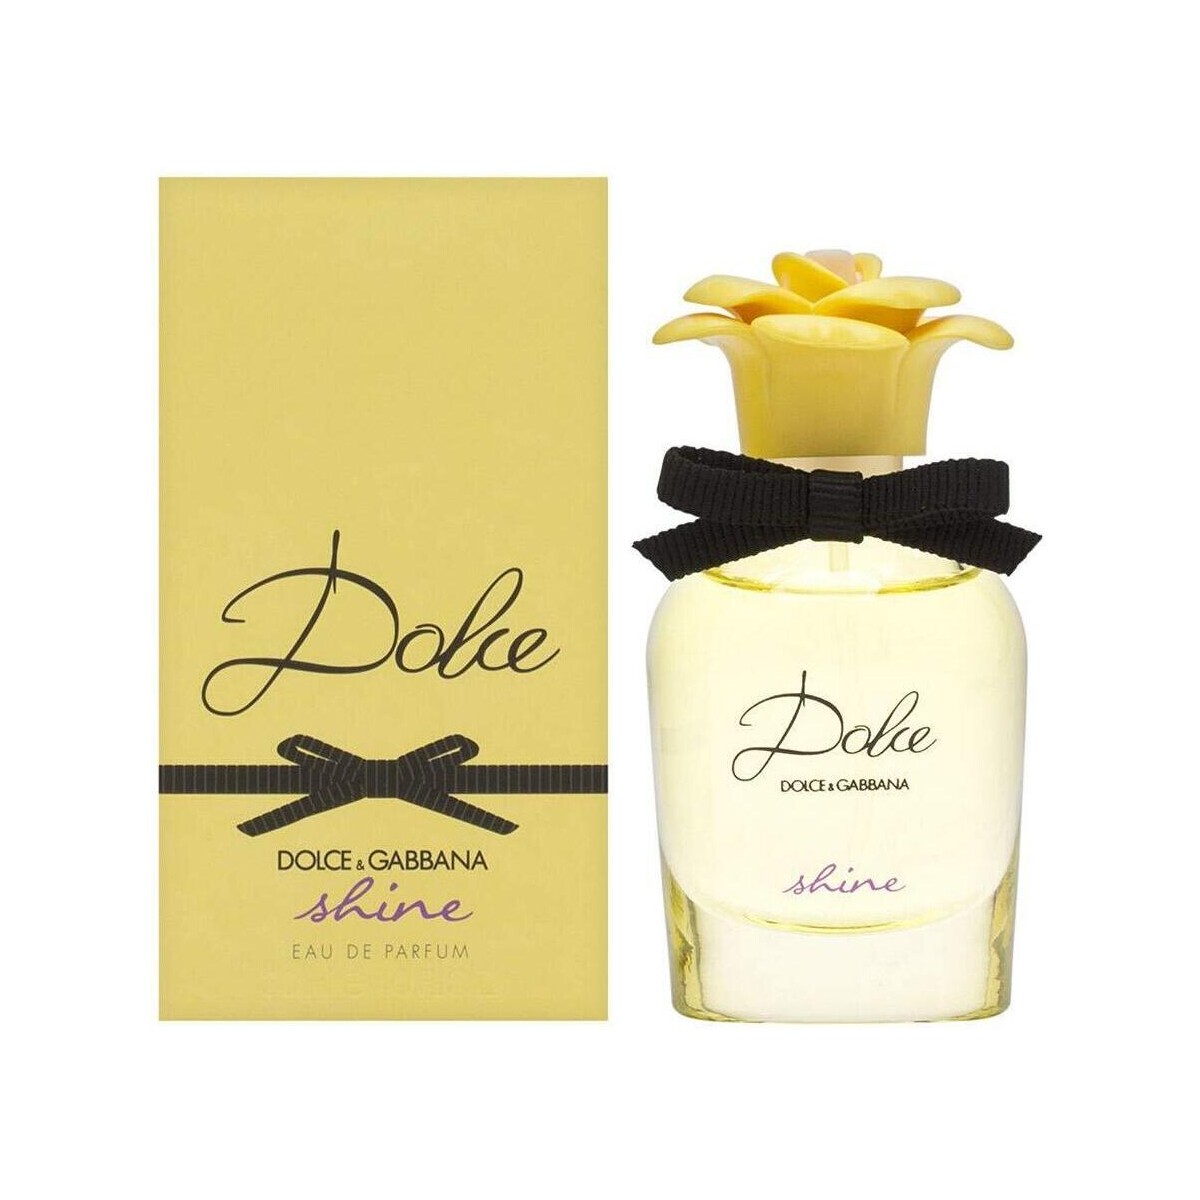 Beauty Damen Eau de parfum  D&G Dolce Shine - Parfüm - 75ml Dolce Shine - perfume - 75ml